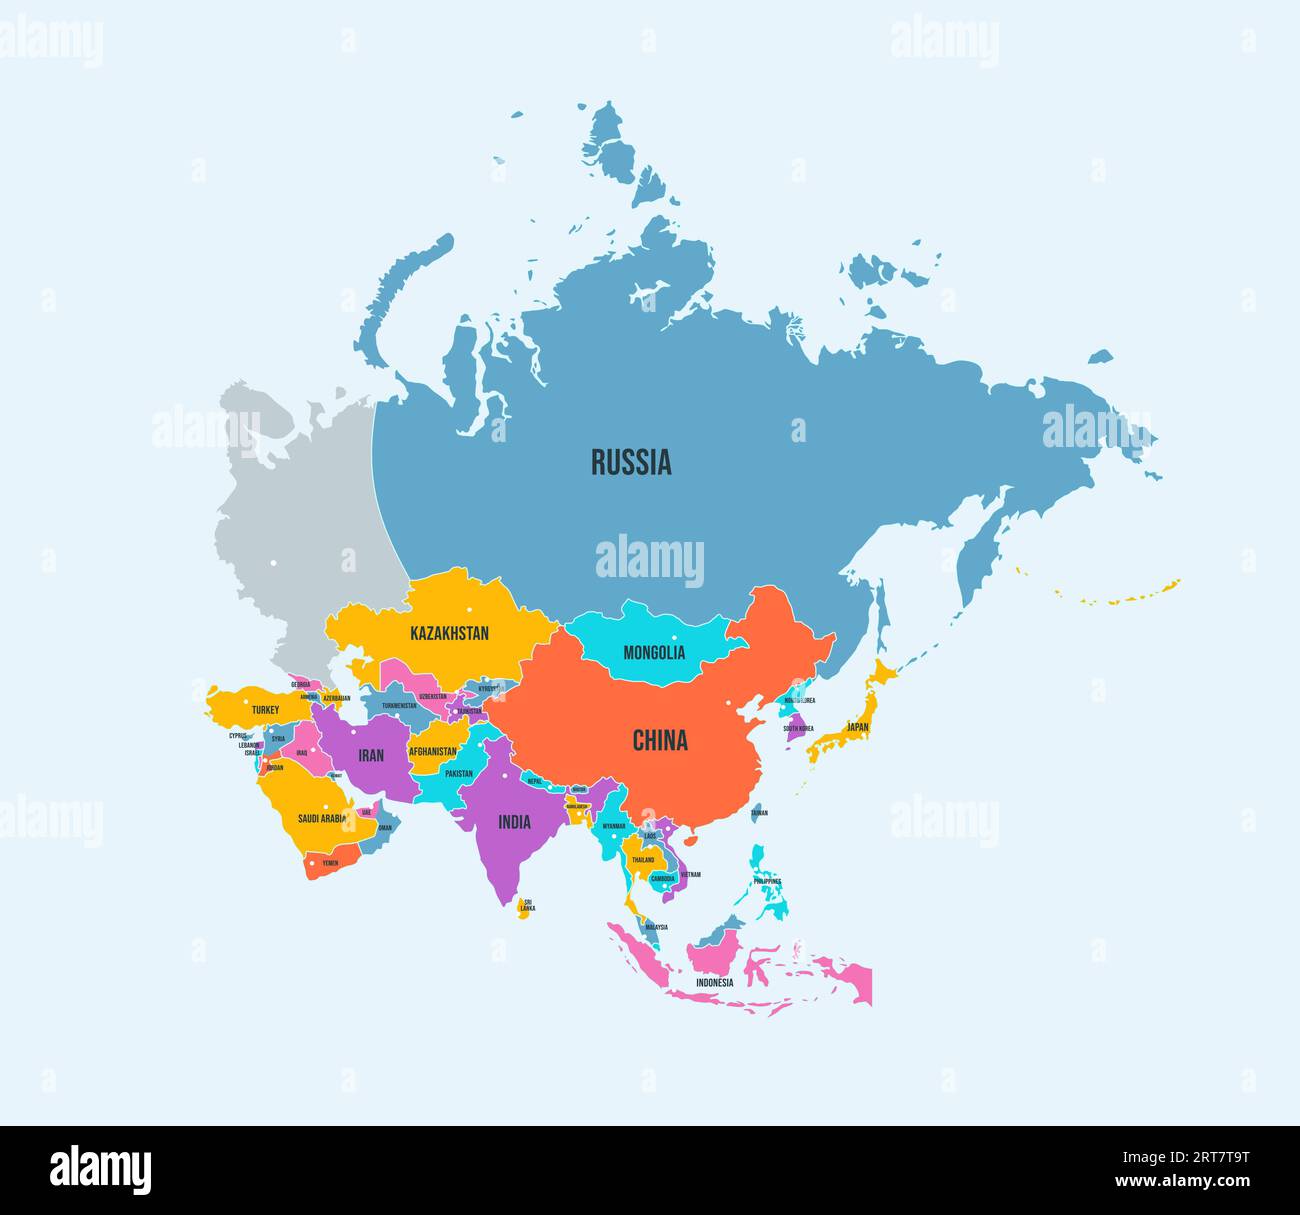 Politische Landkarte des asiatischen Kontinents. Tapisserien Asiens mit Ländergrenzen und Namen isolierter Vektor-Infografik Stock Vektor